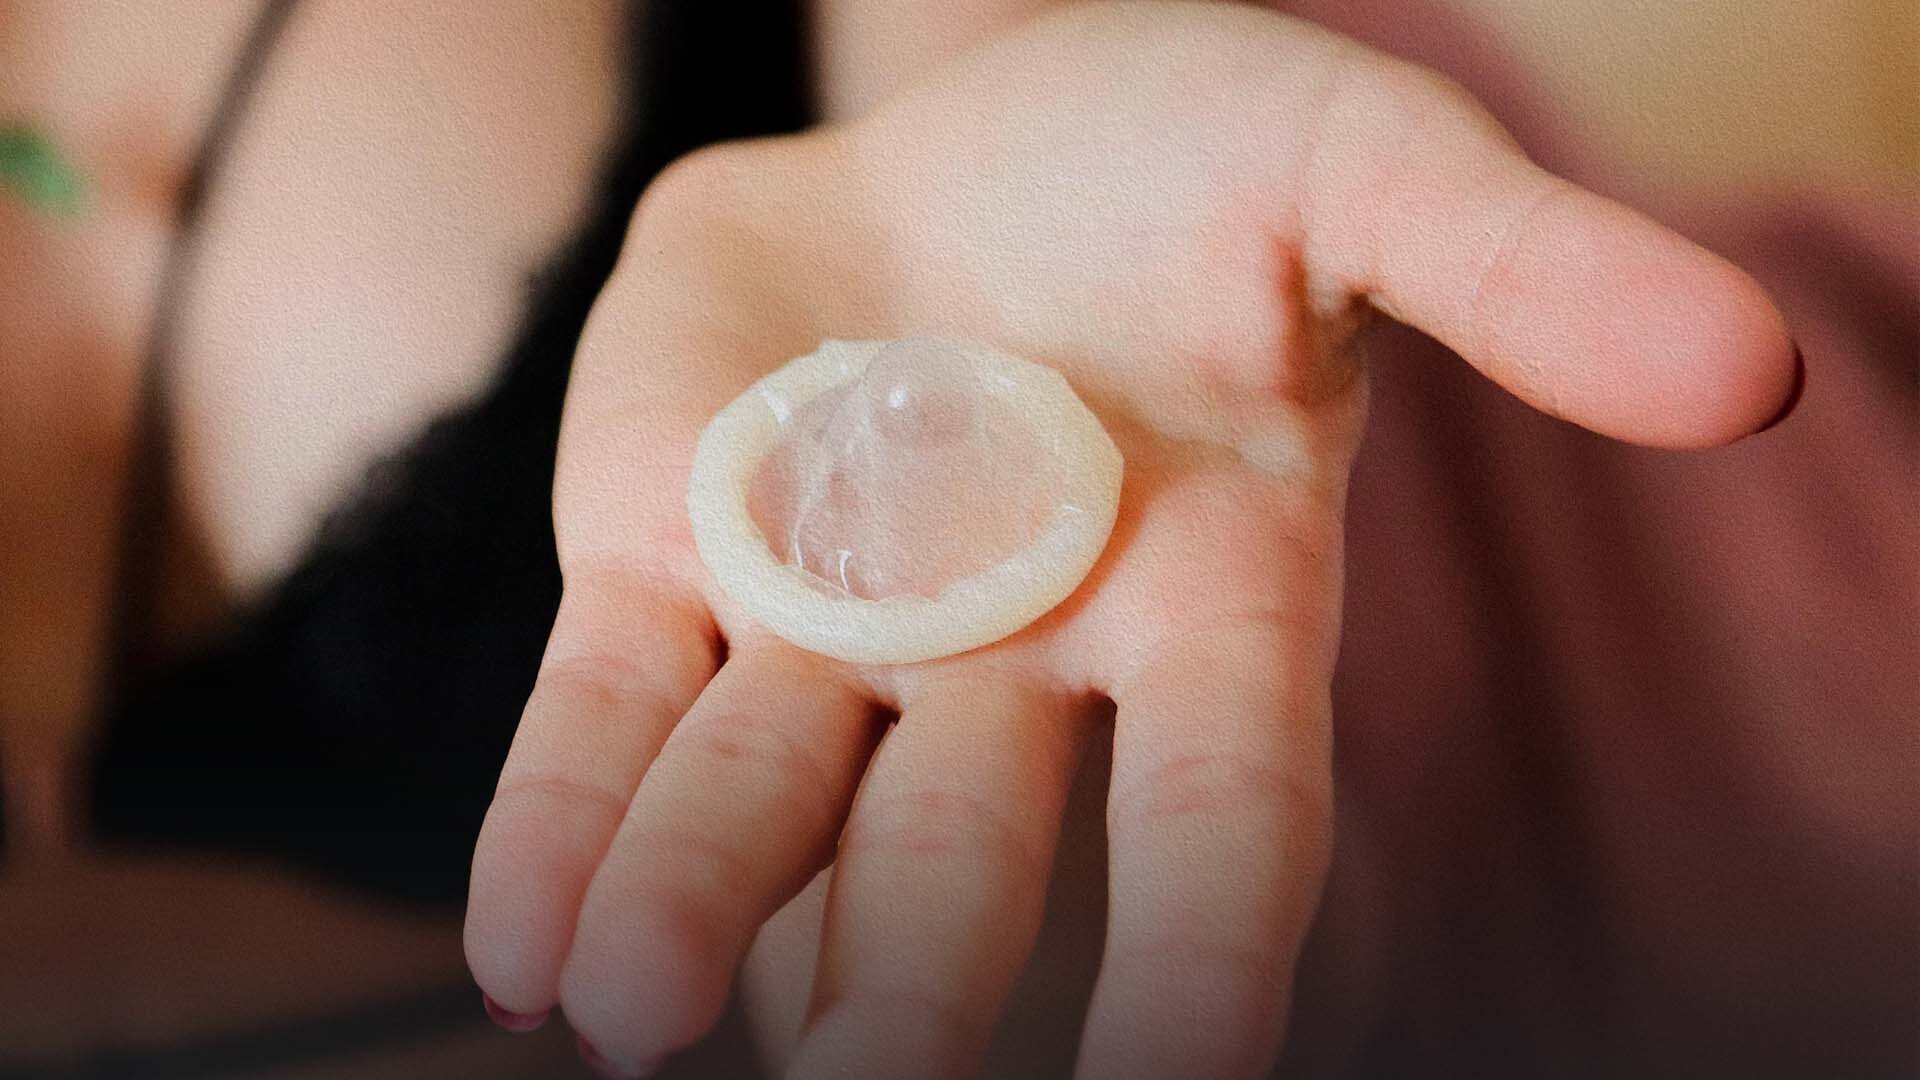 Togliersi il preservativo di nascosto è reato in molti paesi, ma non in Italia